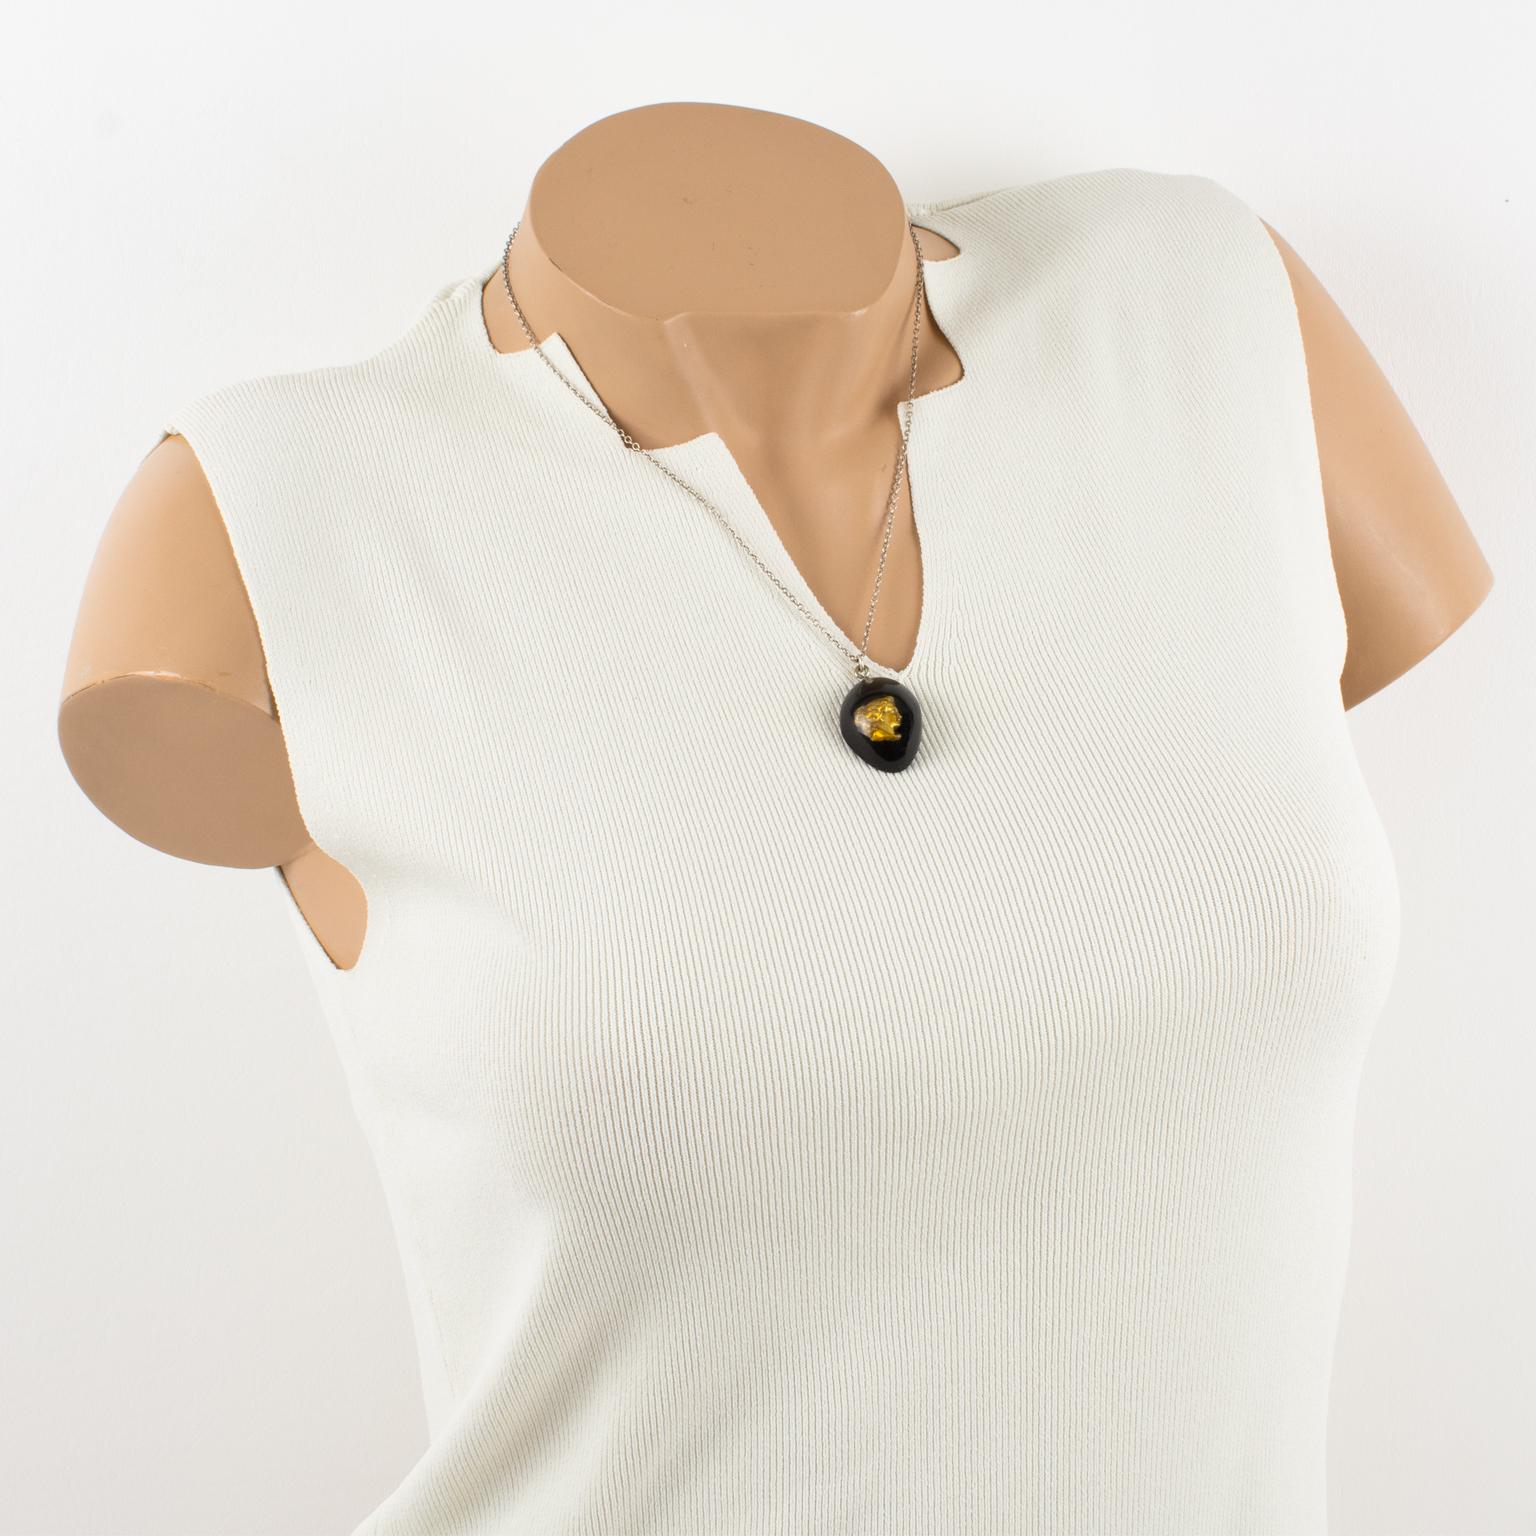 Jean Paul Gaultier Paris a conçu ce superbe collier à pendentif dans les années 1990 pour sa collection Steampunk. Le modèle se compose d'une chaîne en métal argenté avec un fermoir de type homard, ornée d'un pendentif en forme de larme multicouche